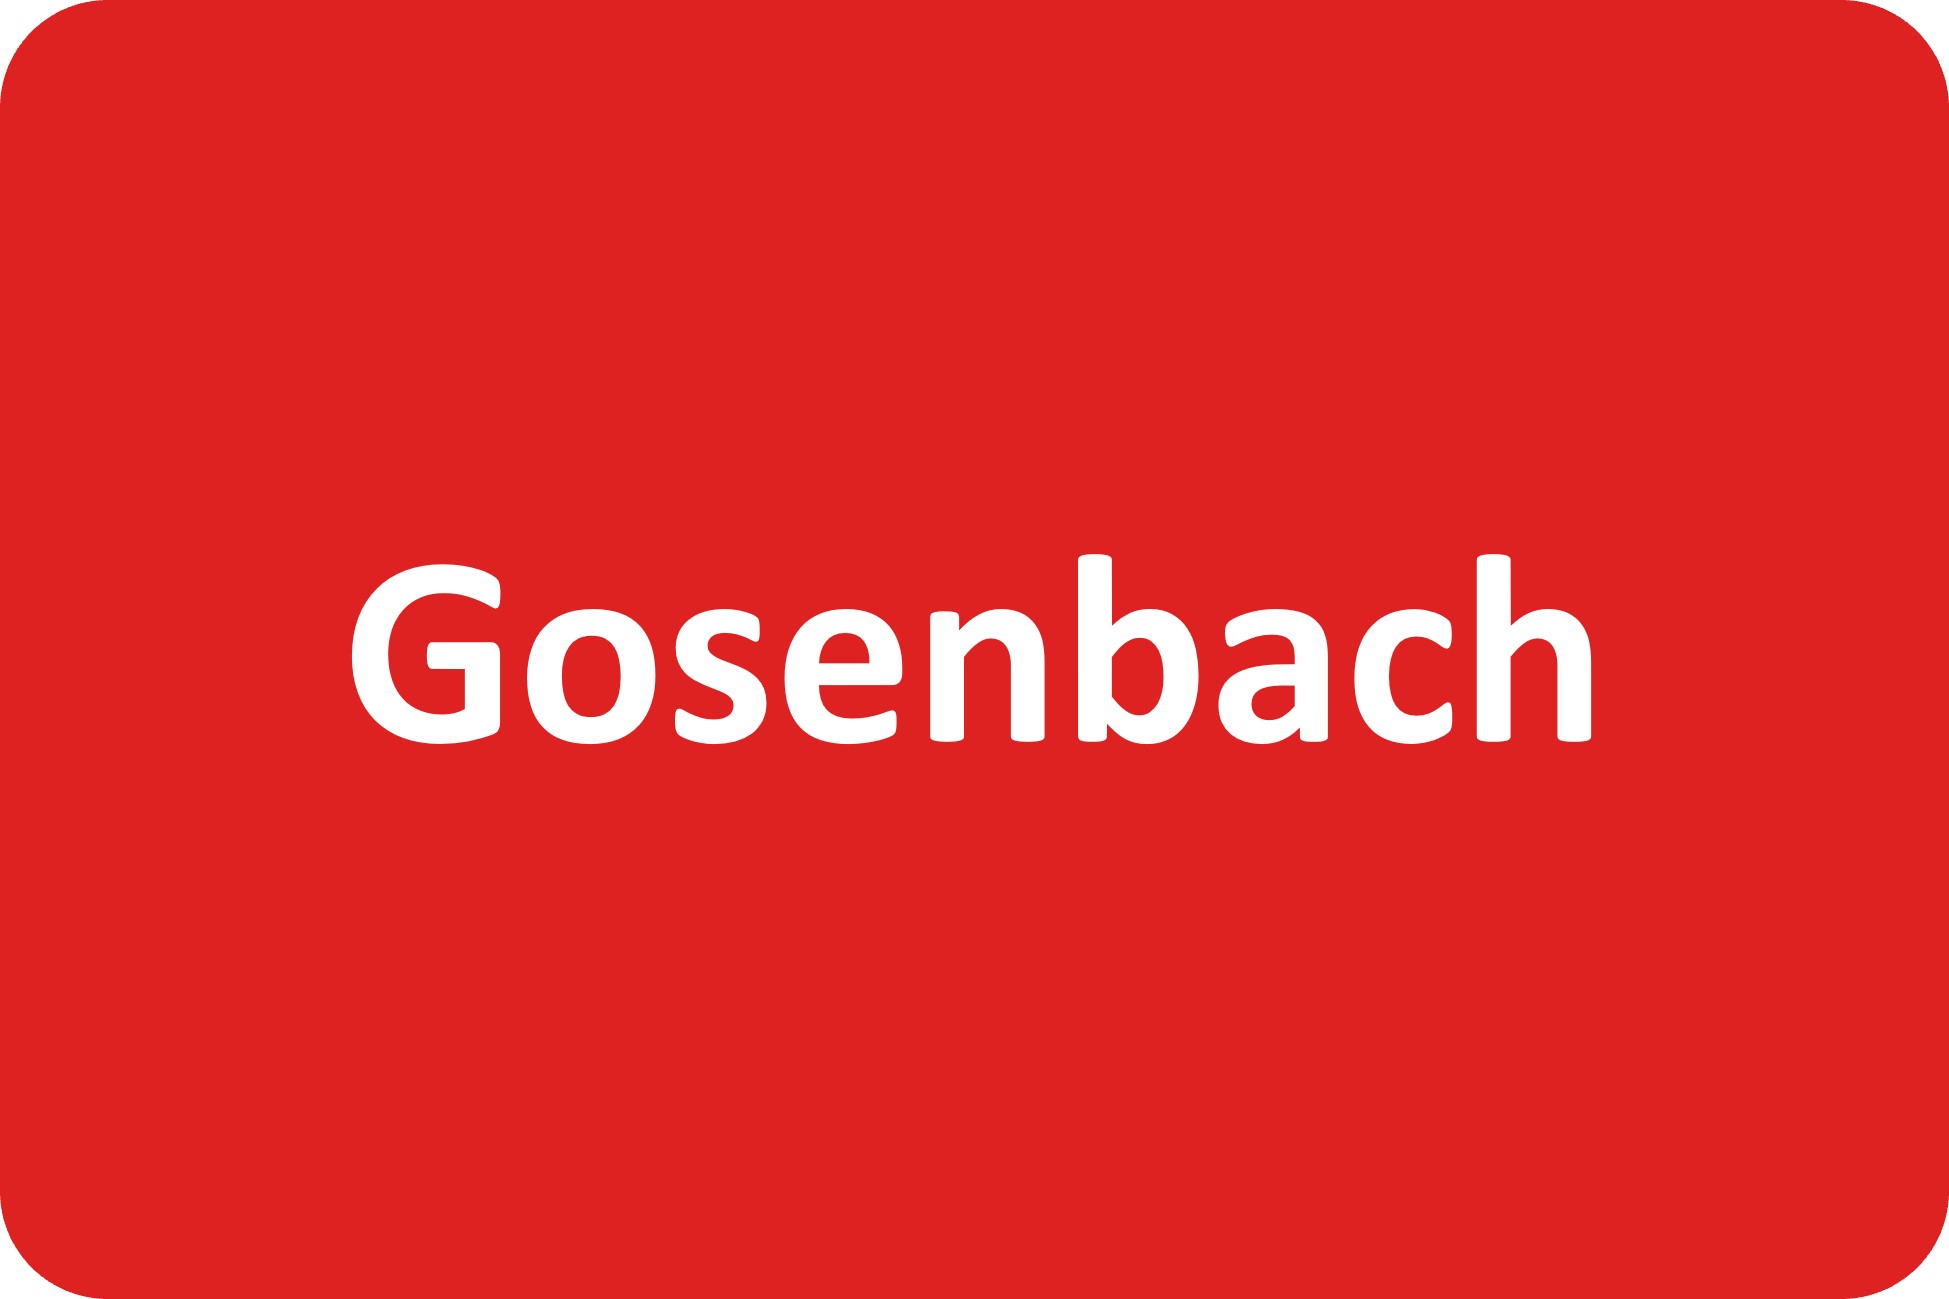 Gemeindebüro Gosenbach